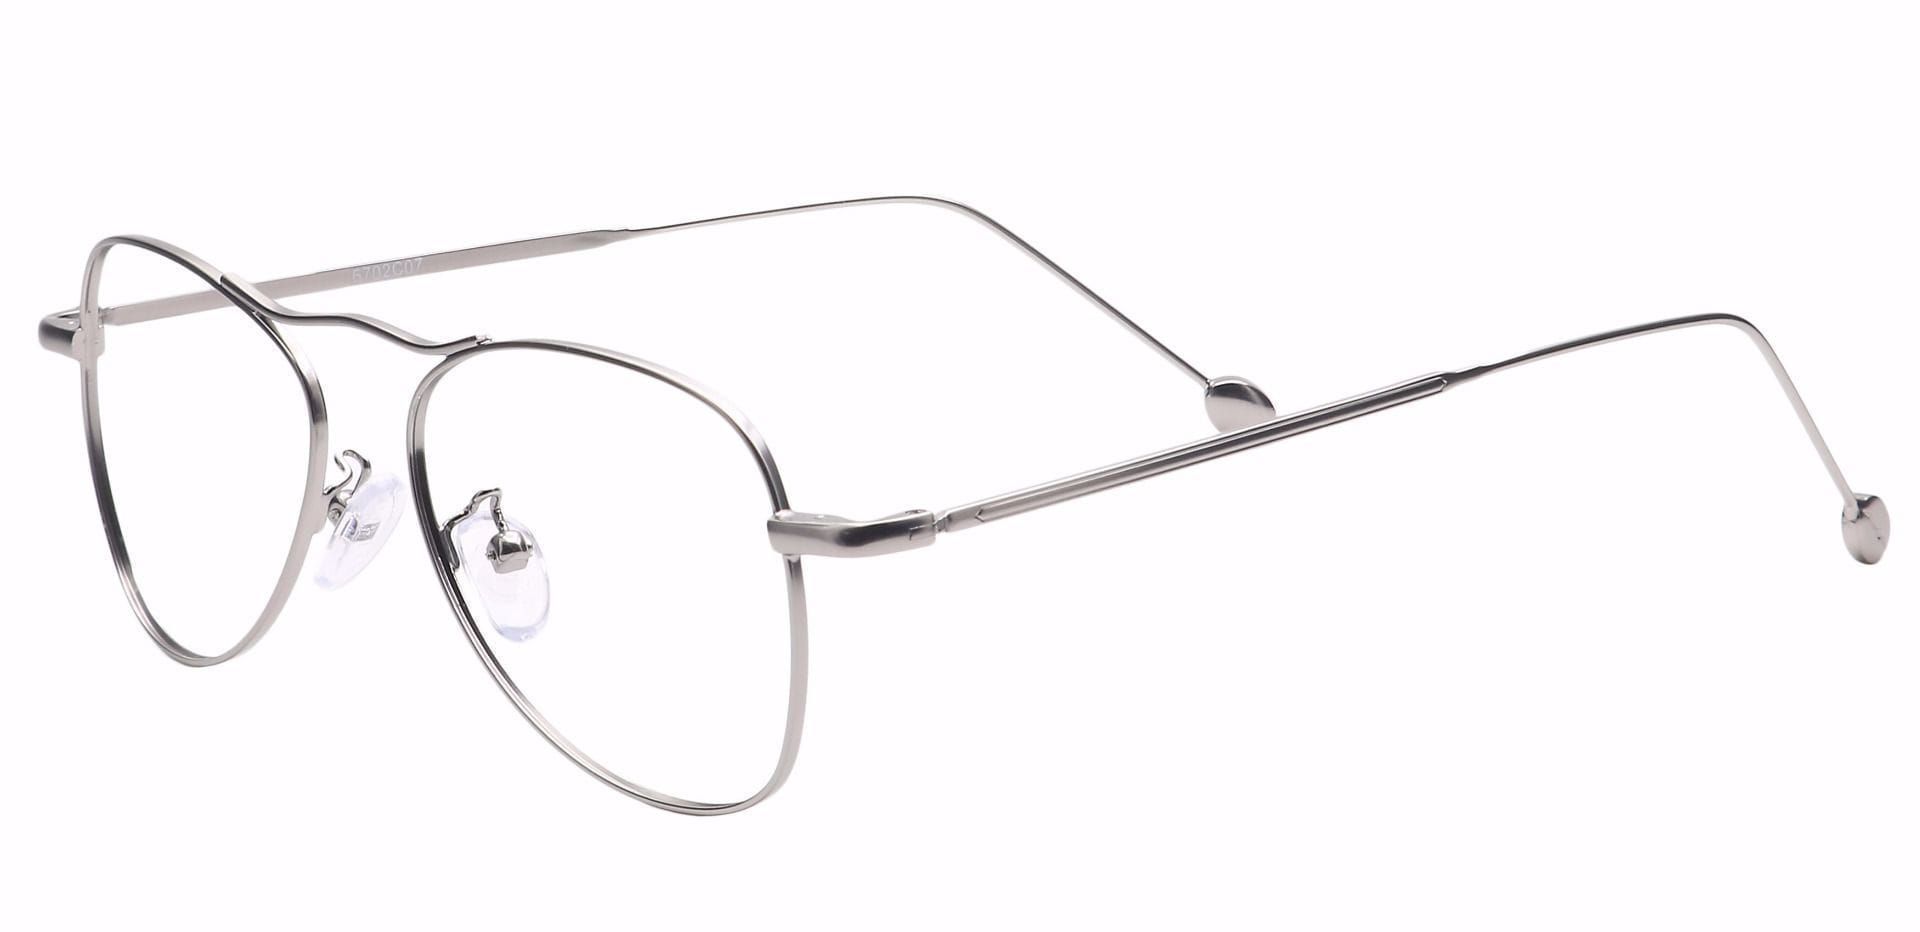 Brio Aviator Non-Rx Glasses - Silver